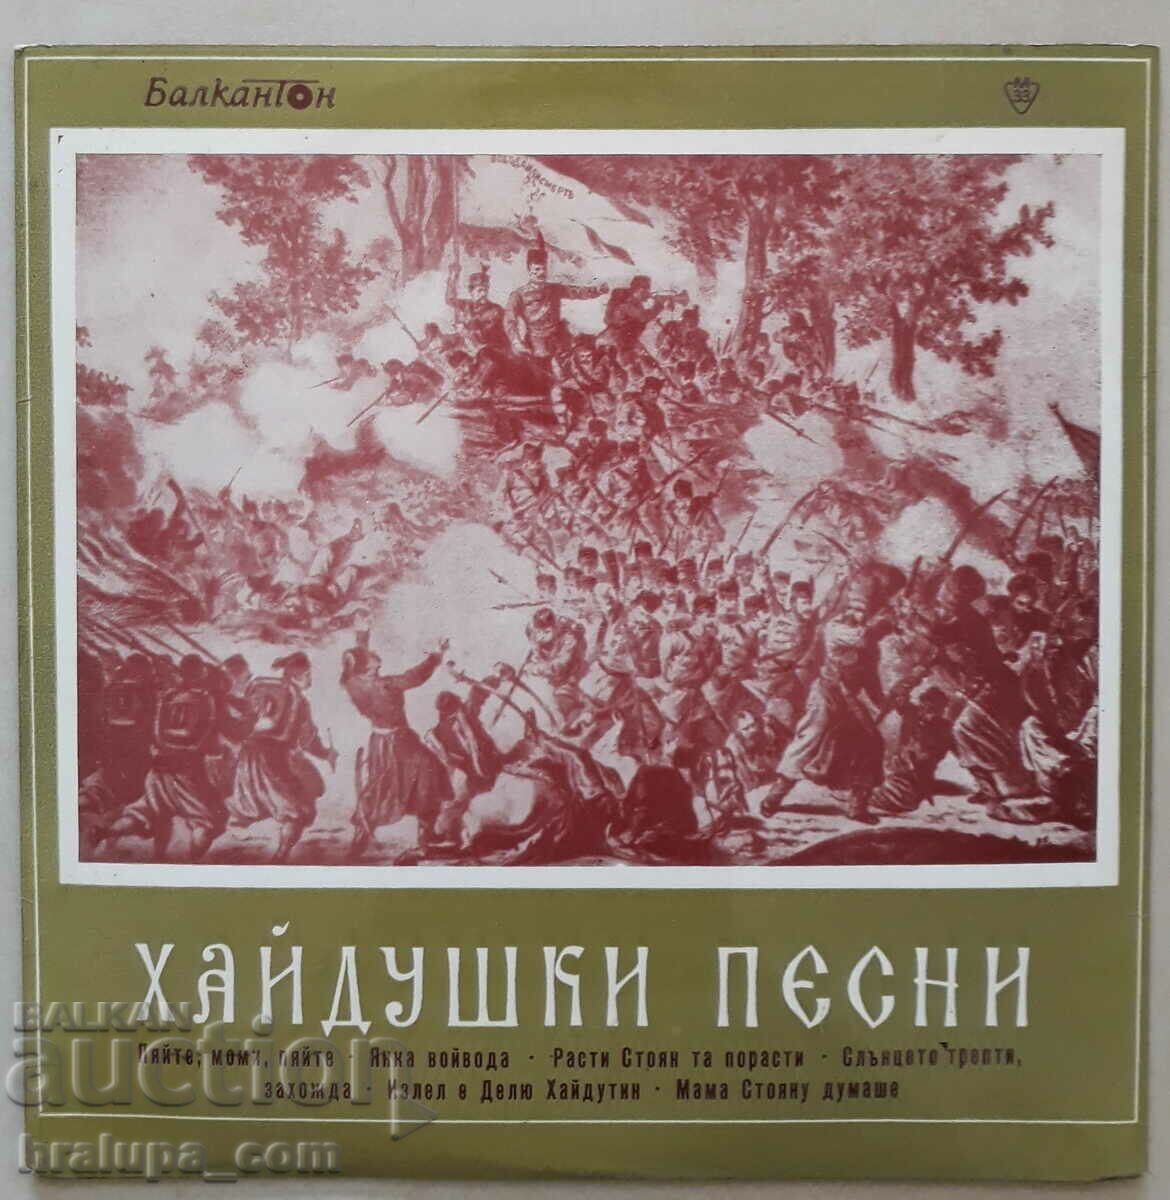 Грамофонна плоча Хайдушки песни ВНН 1040